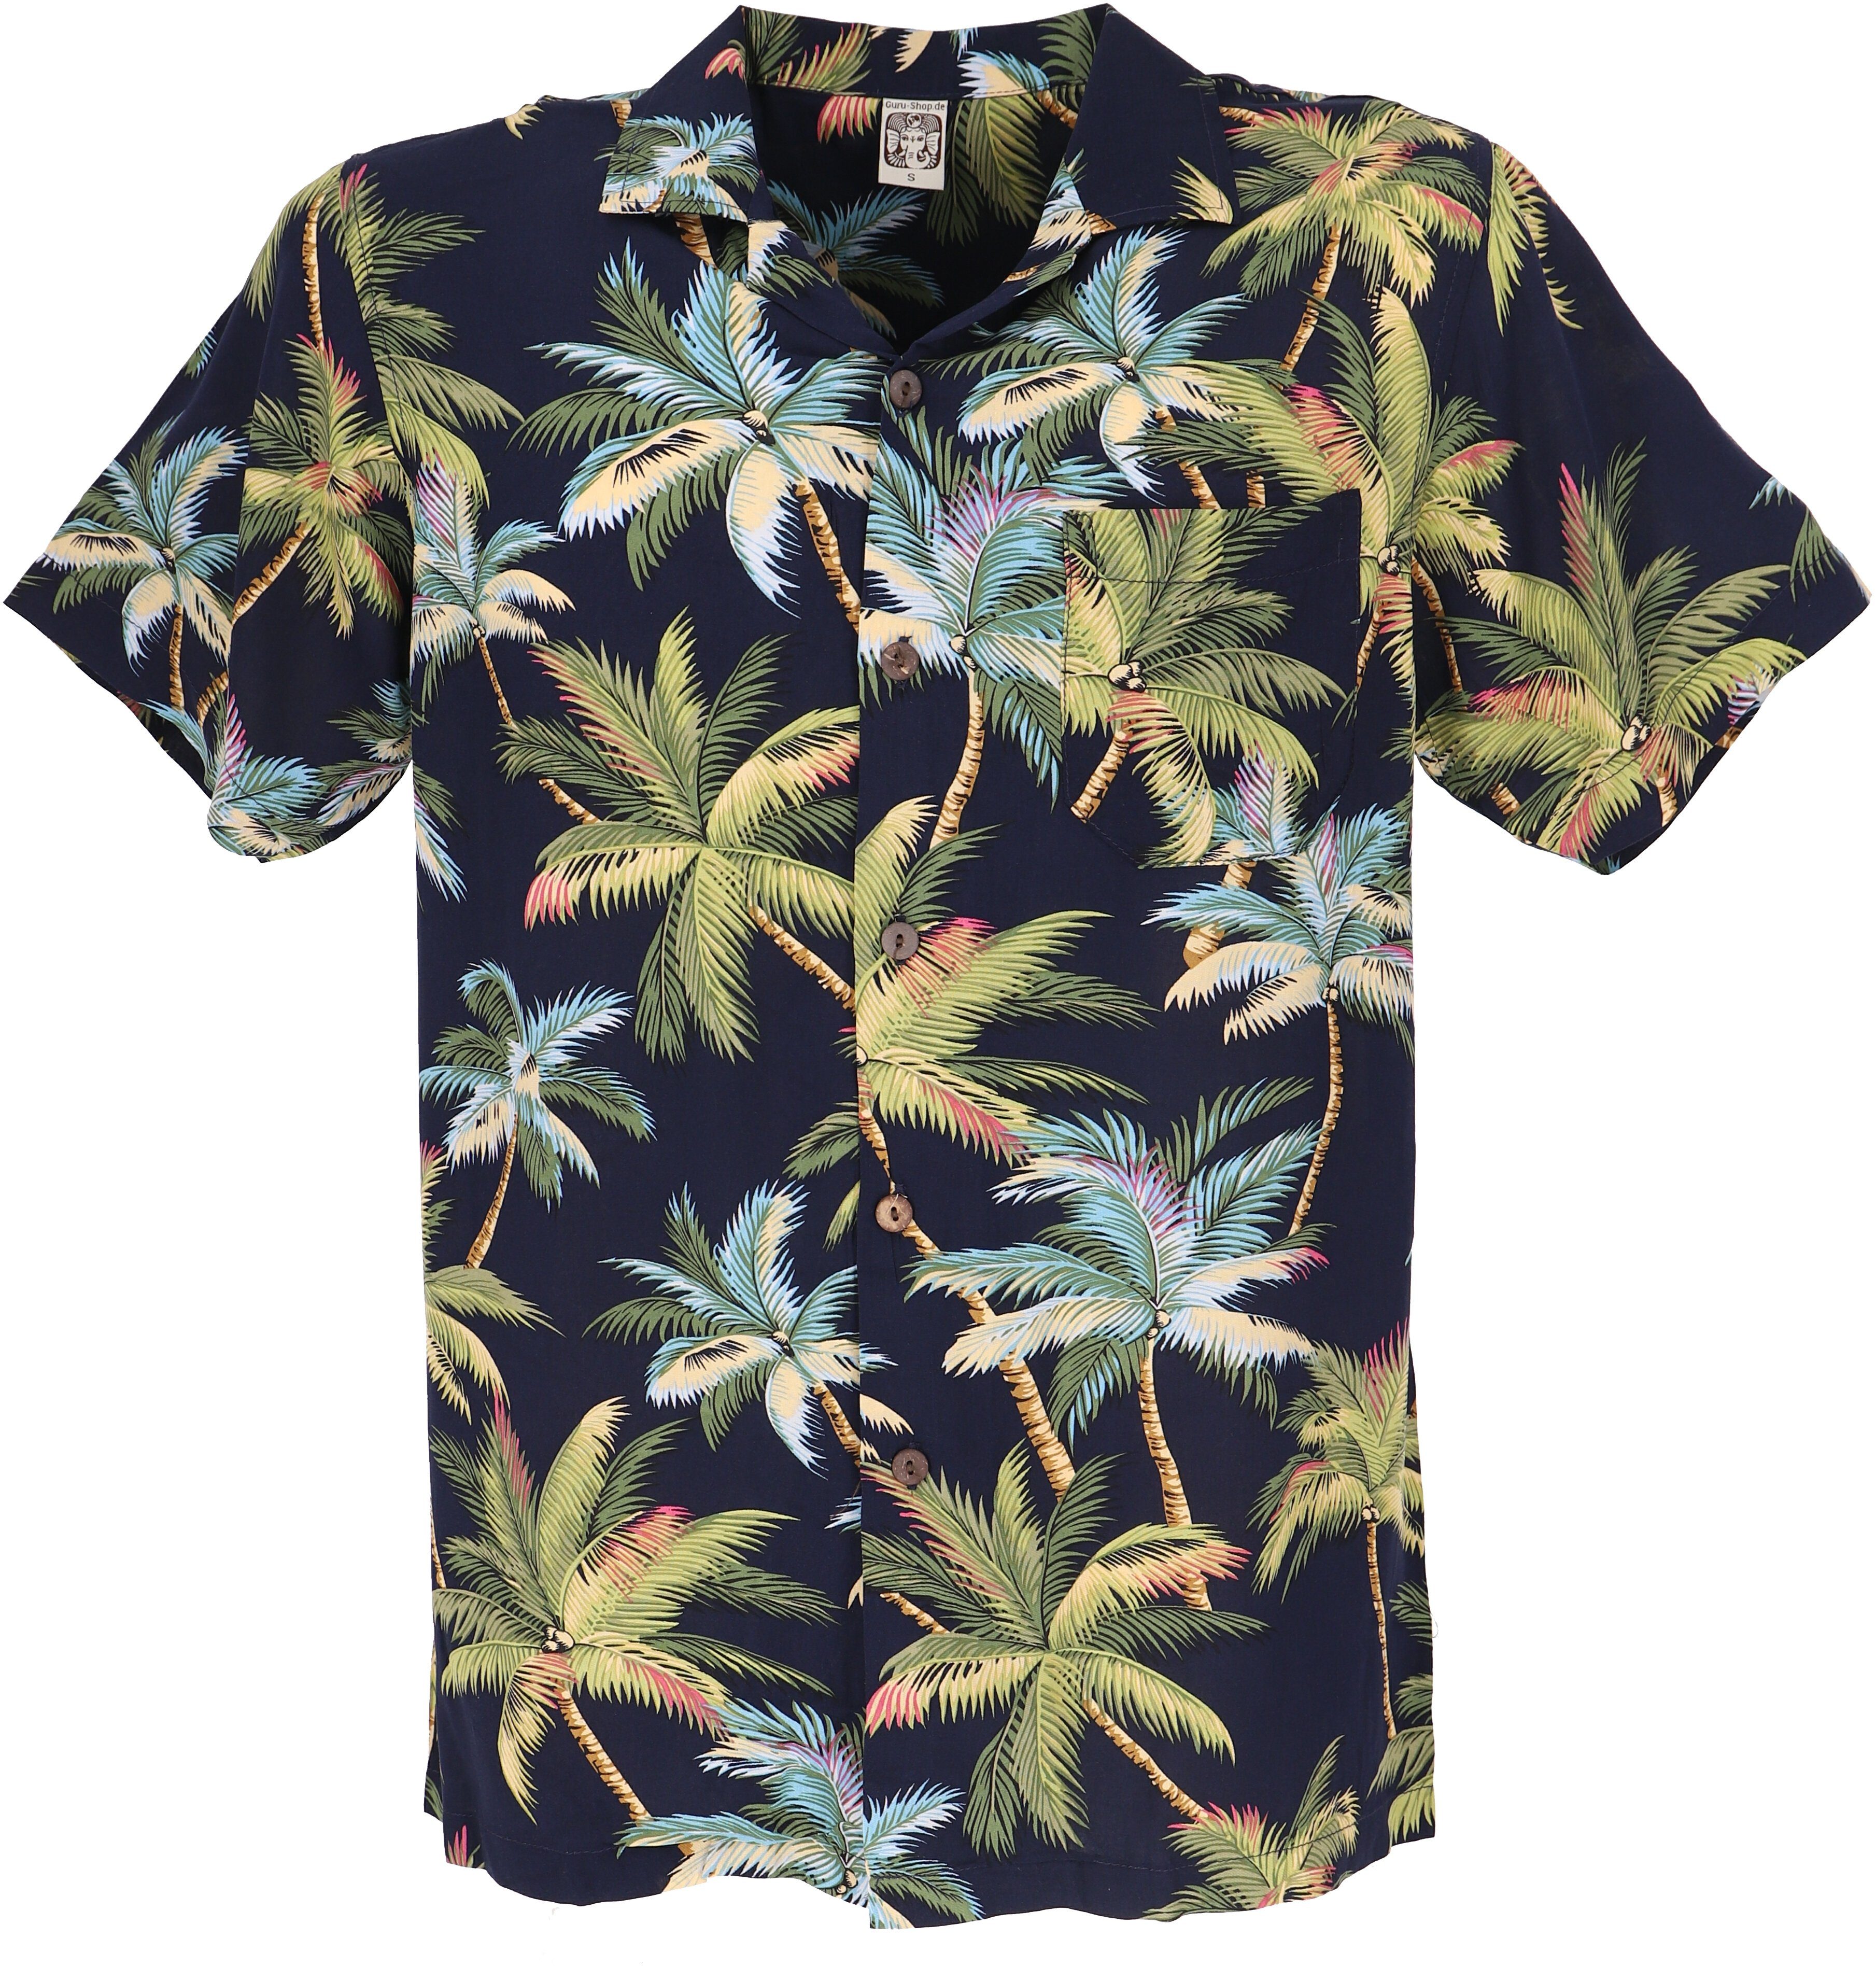 Guru-Shop Hemd & Shirt Hawaiihemd, Hippiehemd Kurzarm, Herrenhemd mit.. Ethno Style, alternative Bekleidung, Hippie